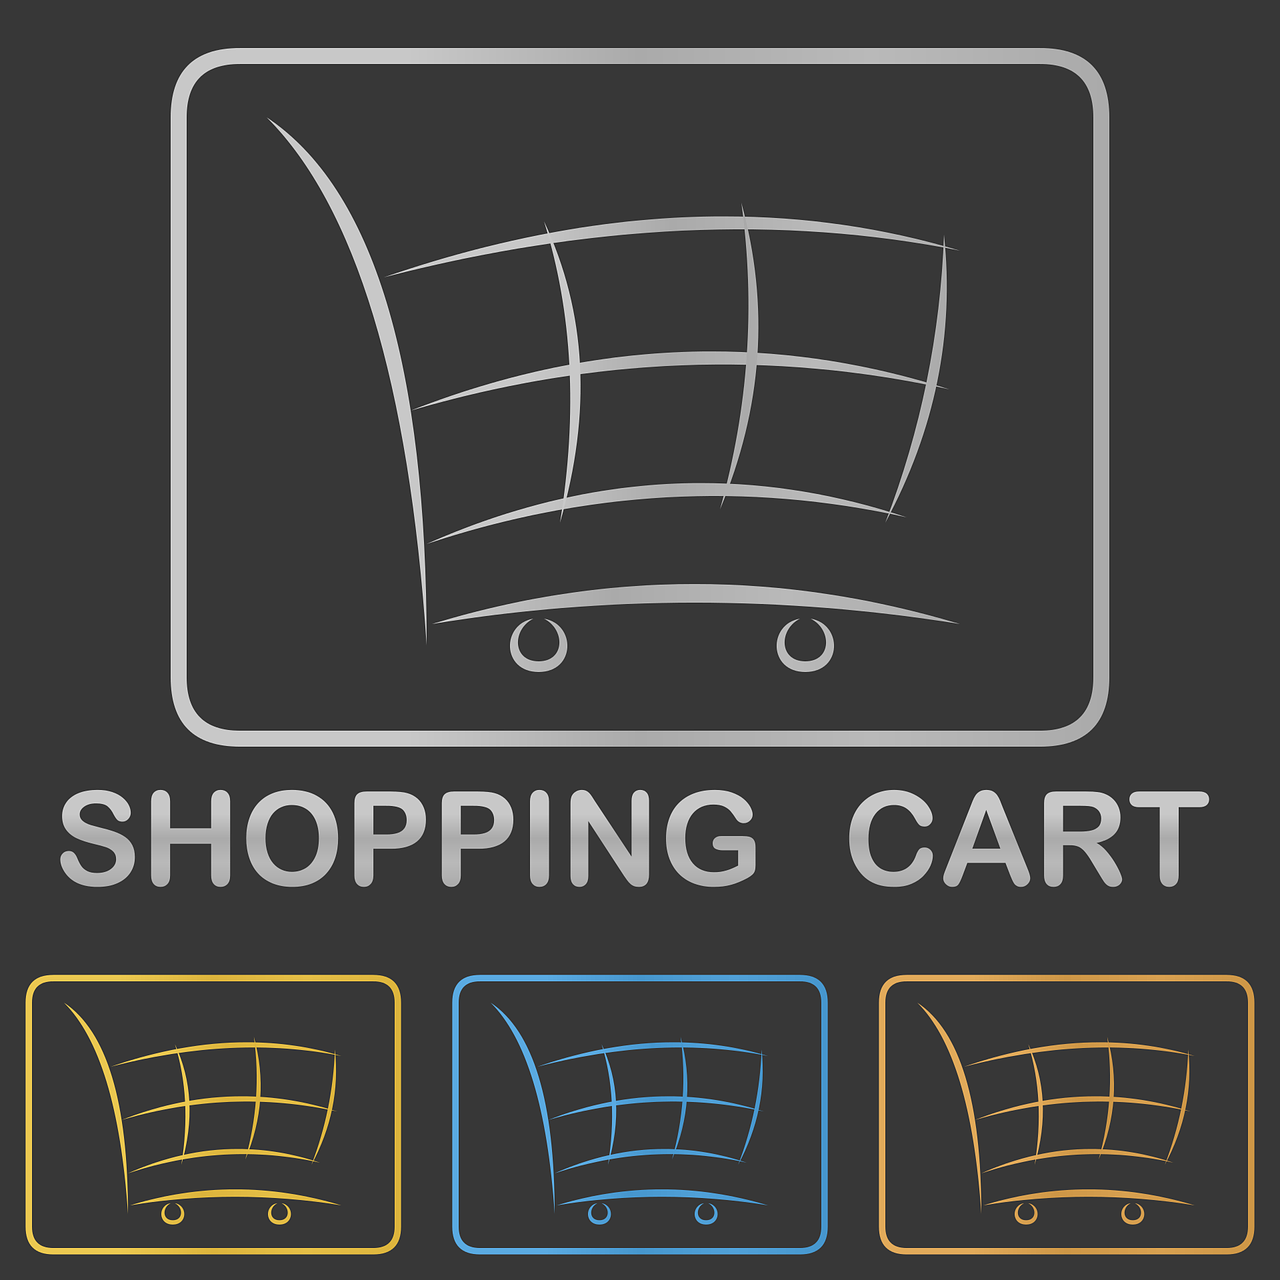 shopping-cart-g2da2488e4_1280